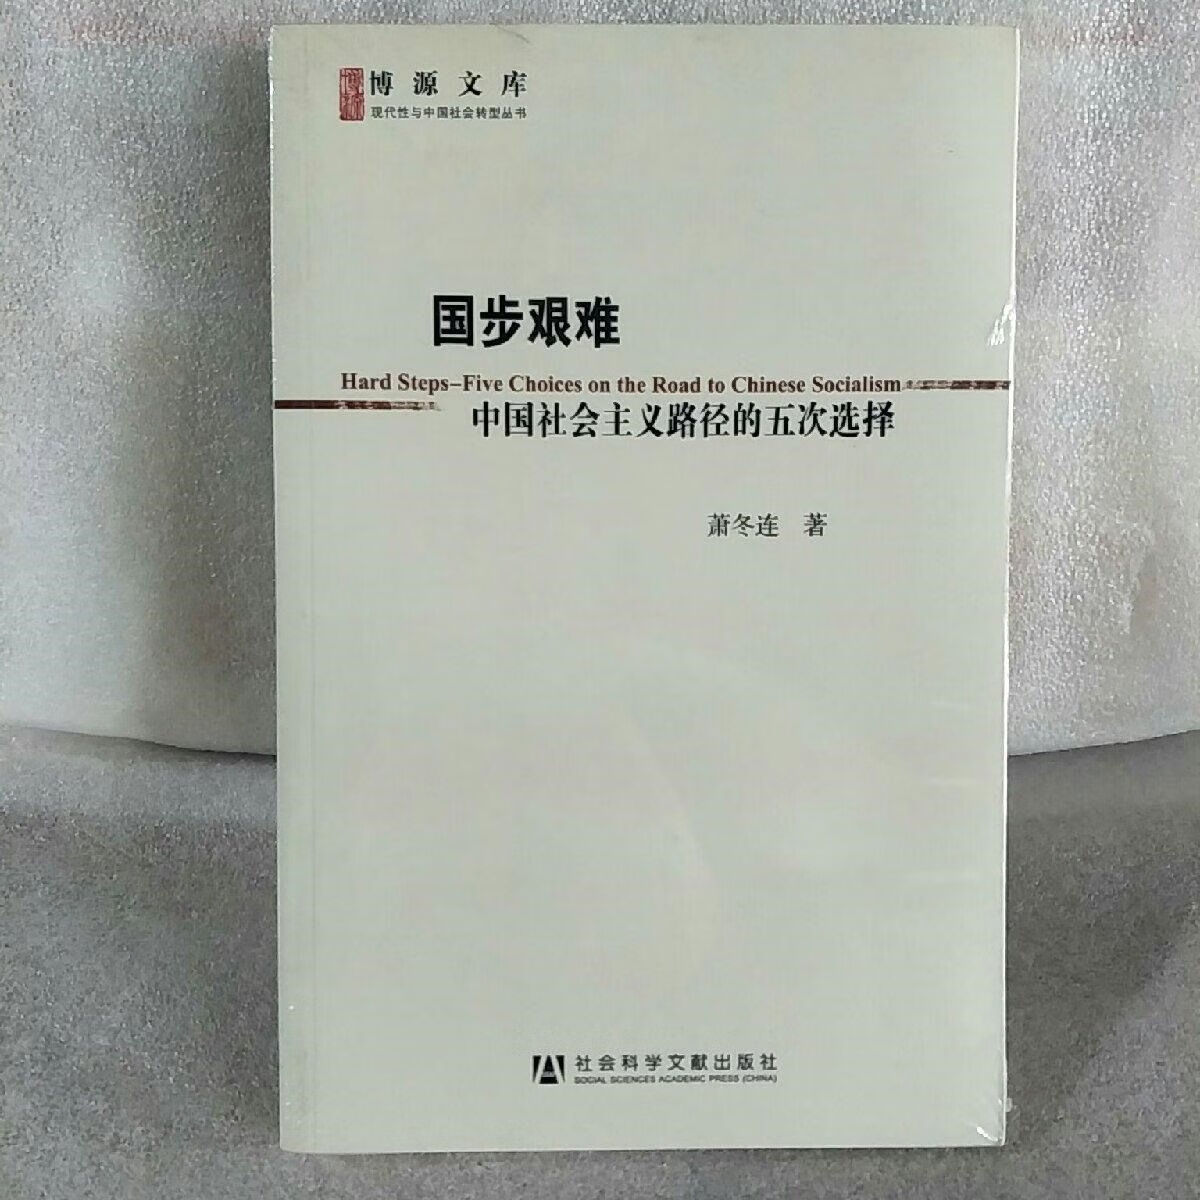 国步艰难:中国社会主义路径的五次选择 /萧冬连 社会科学出版社 默认